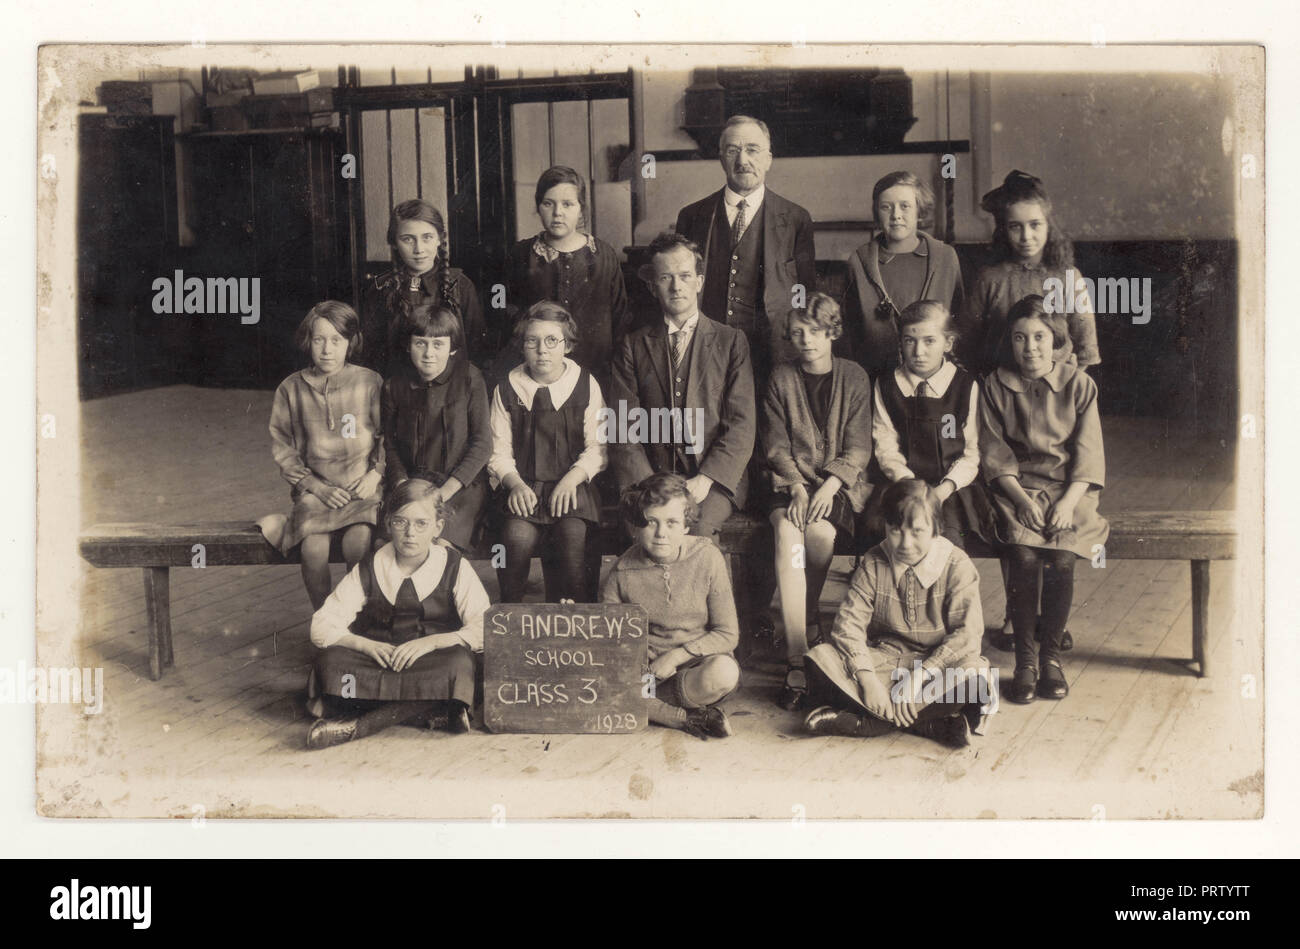 1920's cartolina di St Andrews Scuola classe 3, junior ragazze, in posa per una fotografia di classe con il loro insegnante, datata 1928, eventualmente a Sutton-in-Ashfield, Nottingham, Inghilterra, Regno Unito Foto Stock